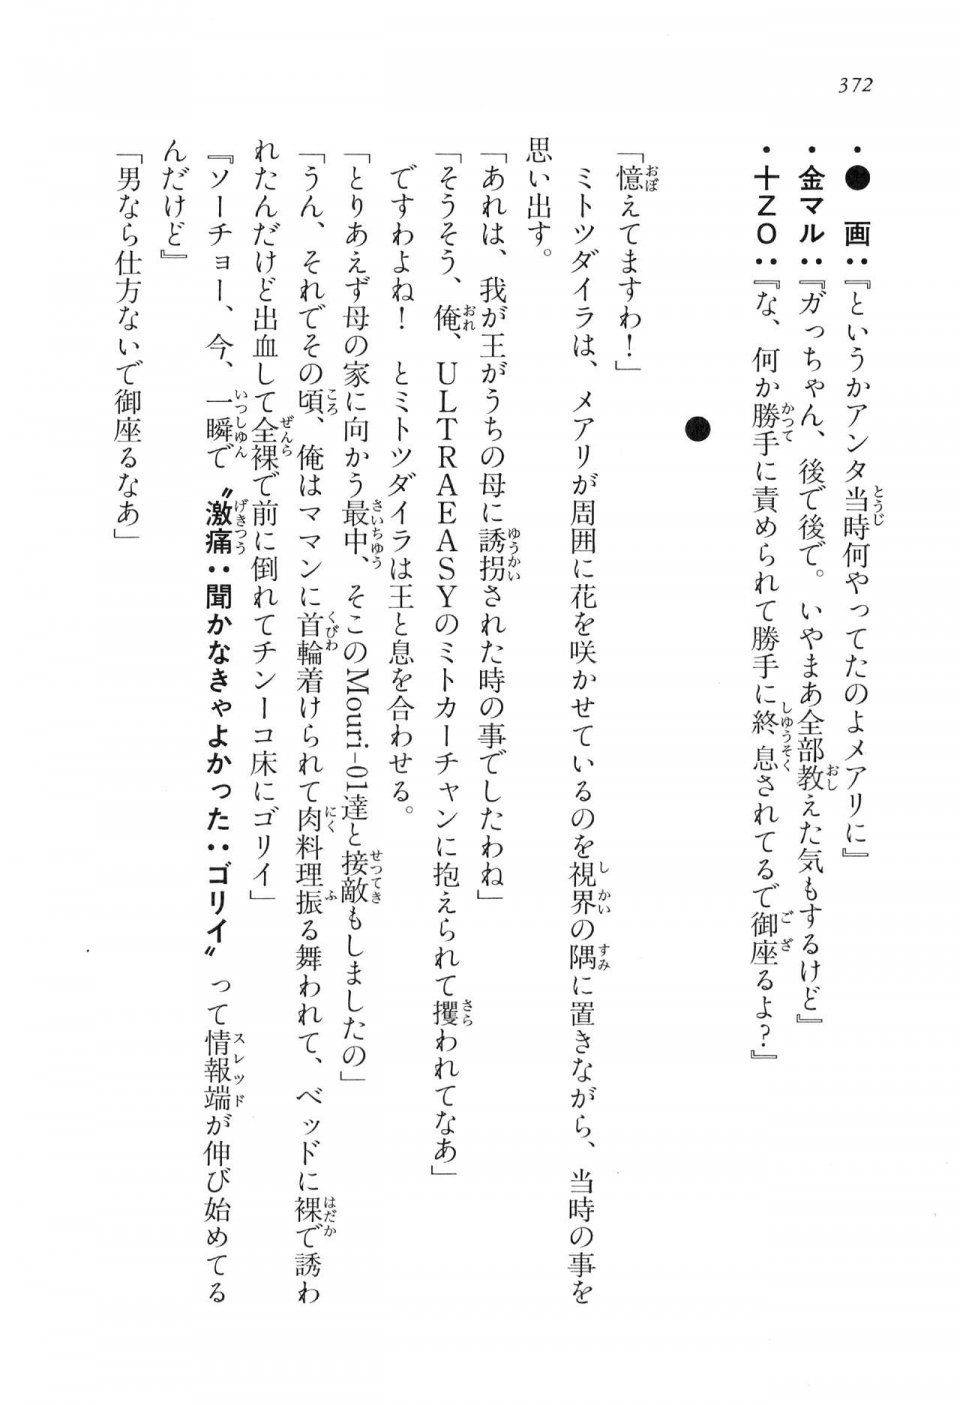 Kyoukai Senjou no Horizon LN Vol 16(7A) - Photo #372